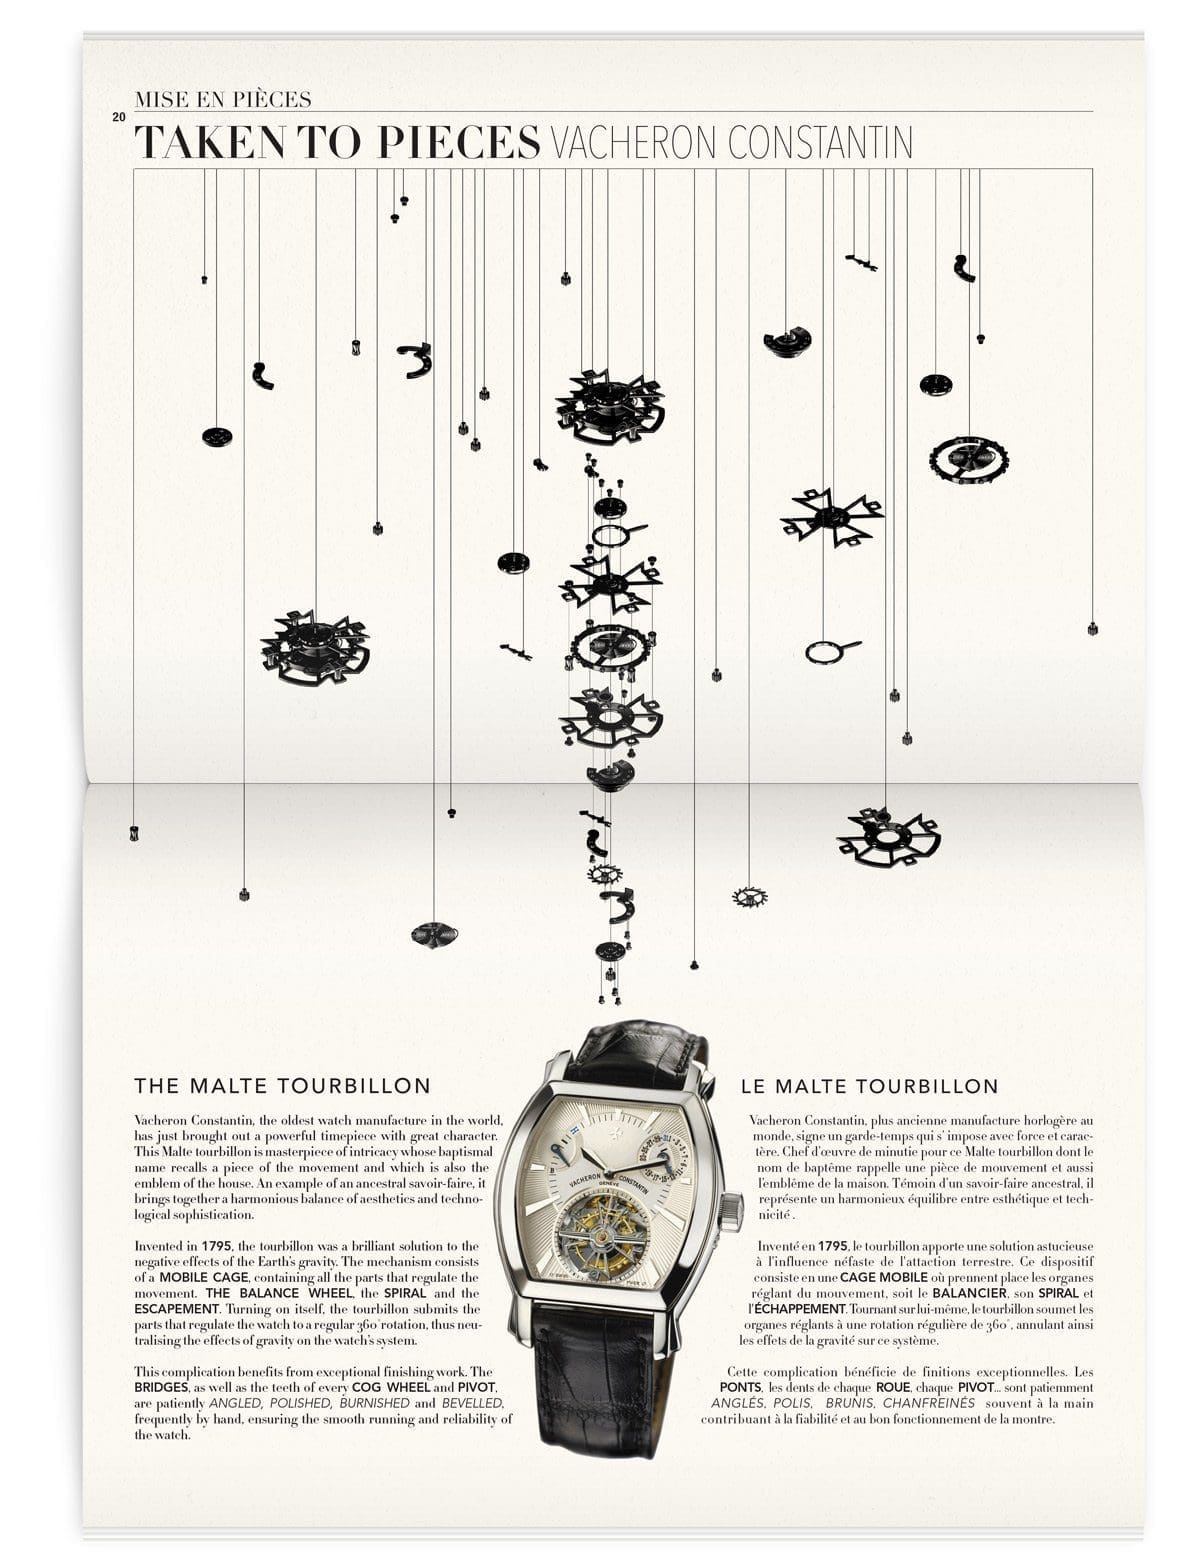 La page mise en pièce, la montre est mise en pièce de manière graphique, magazine Iconofly, revue d’art autour d’un accessoire unique, la montre, design IchetKar